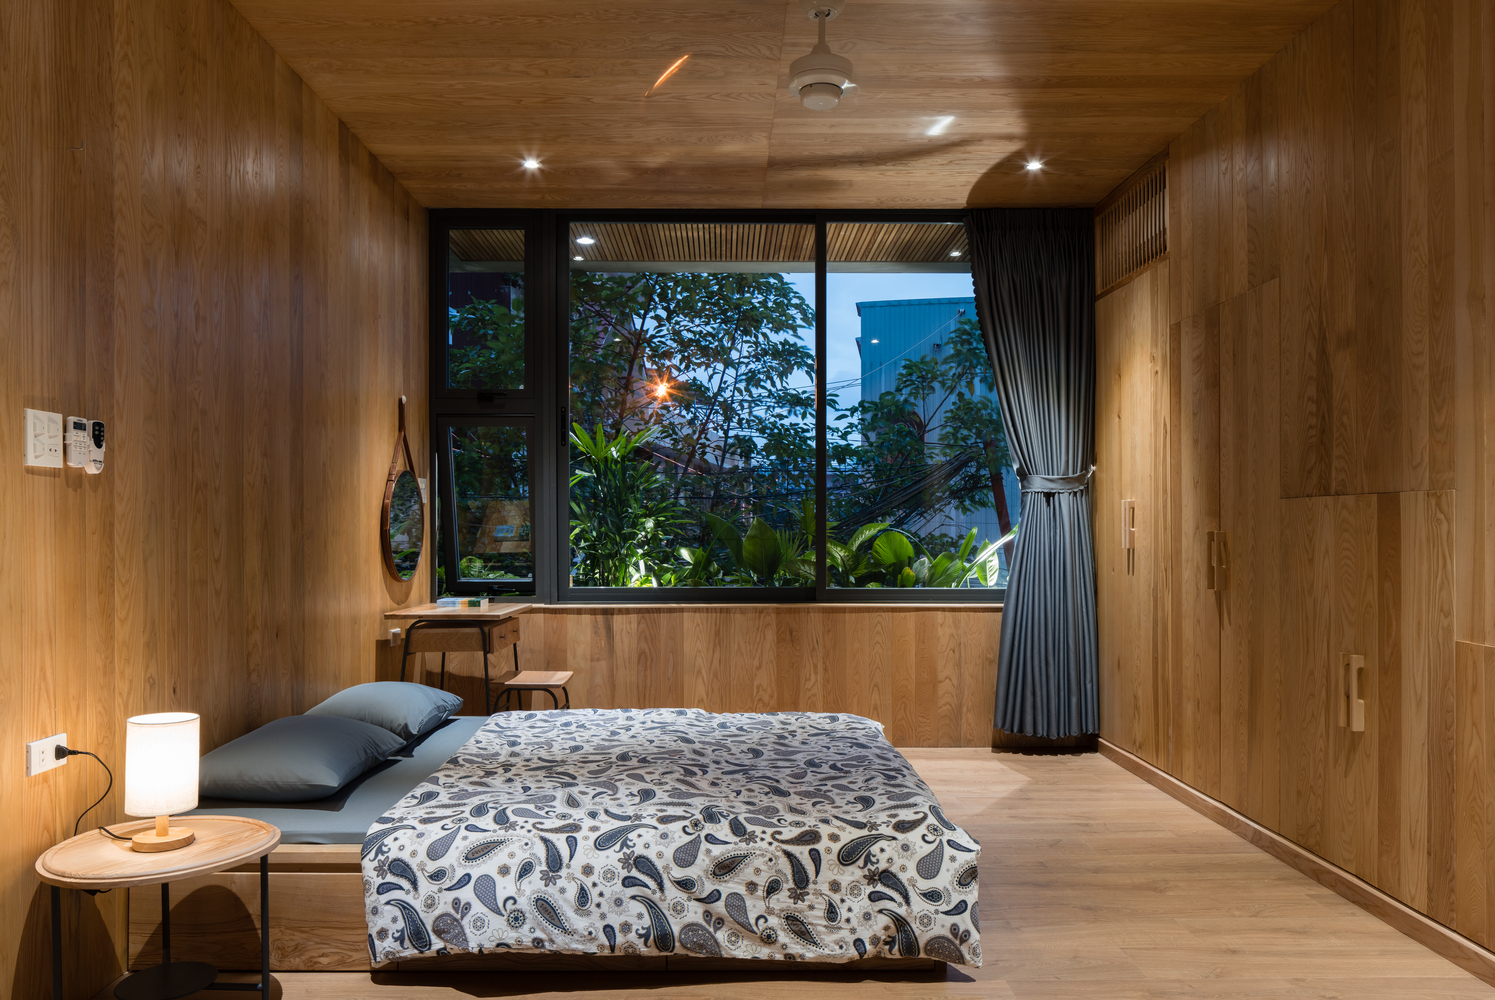 Hình ảnh toàn cảnh phòng ngủ lớn với chất liệu gỗ chủ đạo, bàn tròn đầu giường, đèn âm trần, cửa kính lớn mở ra sân vườn